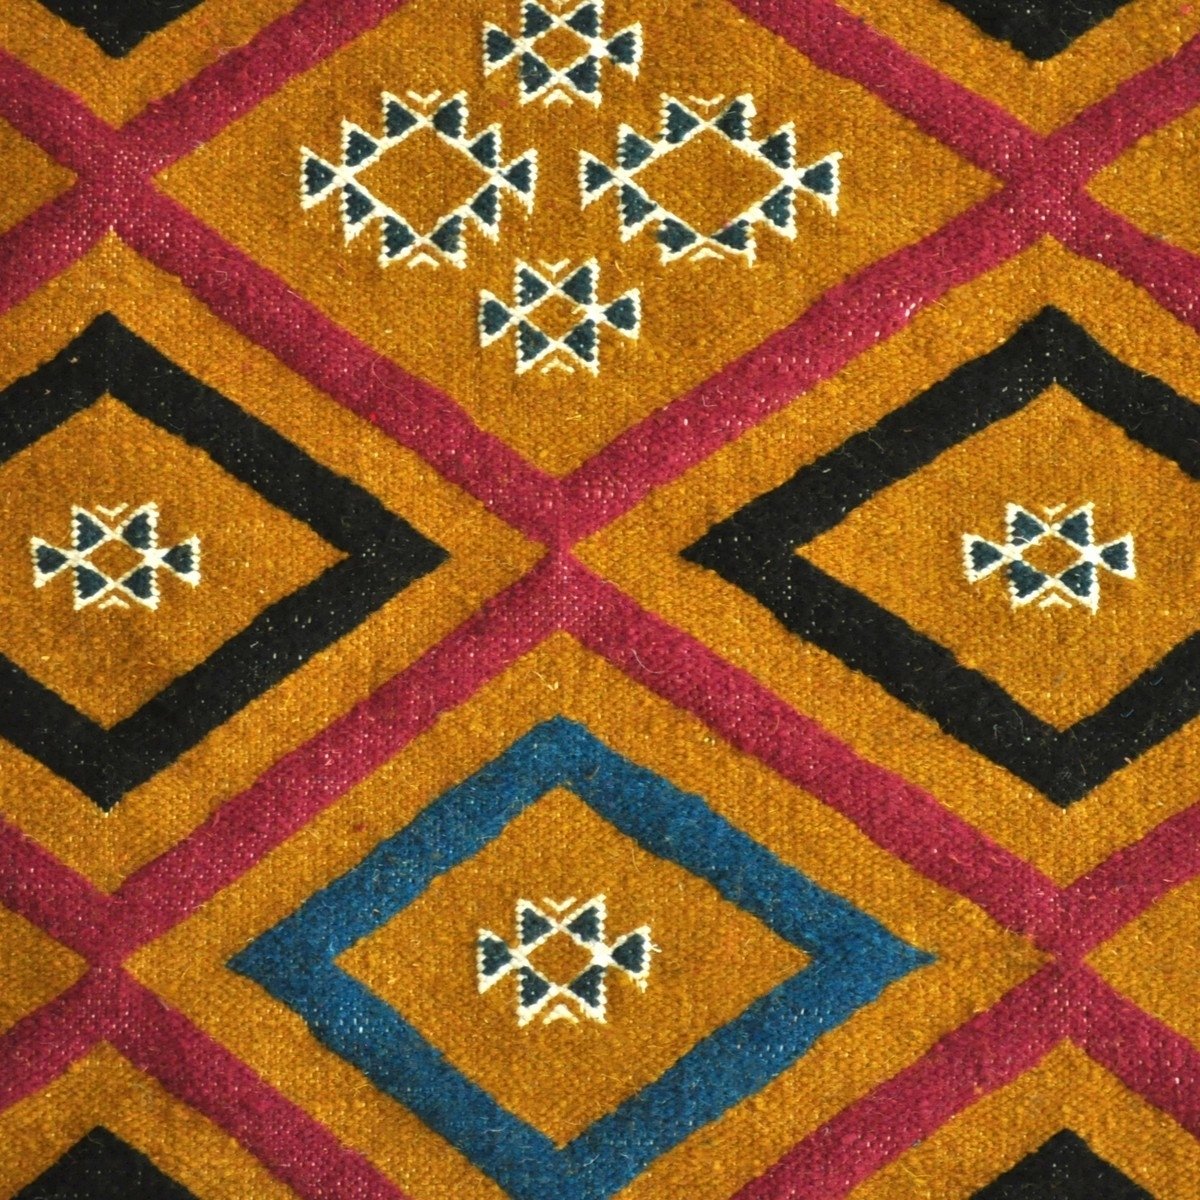 Tapete berbere Tapete Kilim longo Ajim 65x215 Amarelo(Tecidos à mão, Lã, Tunísia) Tapete tunisiano kilim, estilo marroquino. Tap